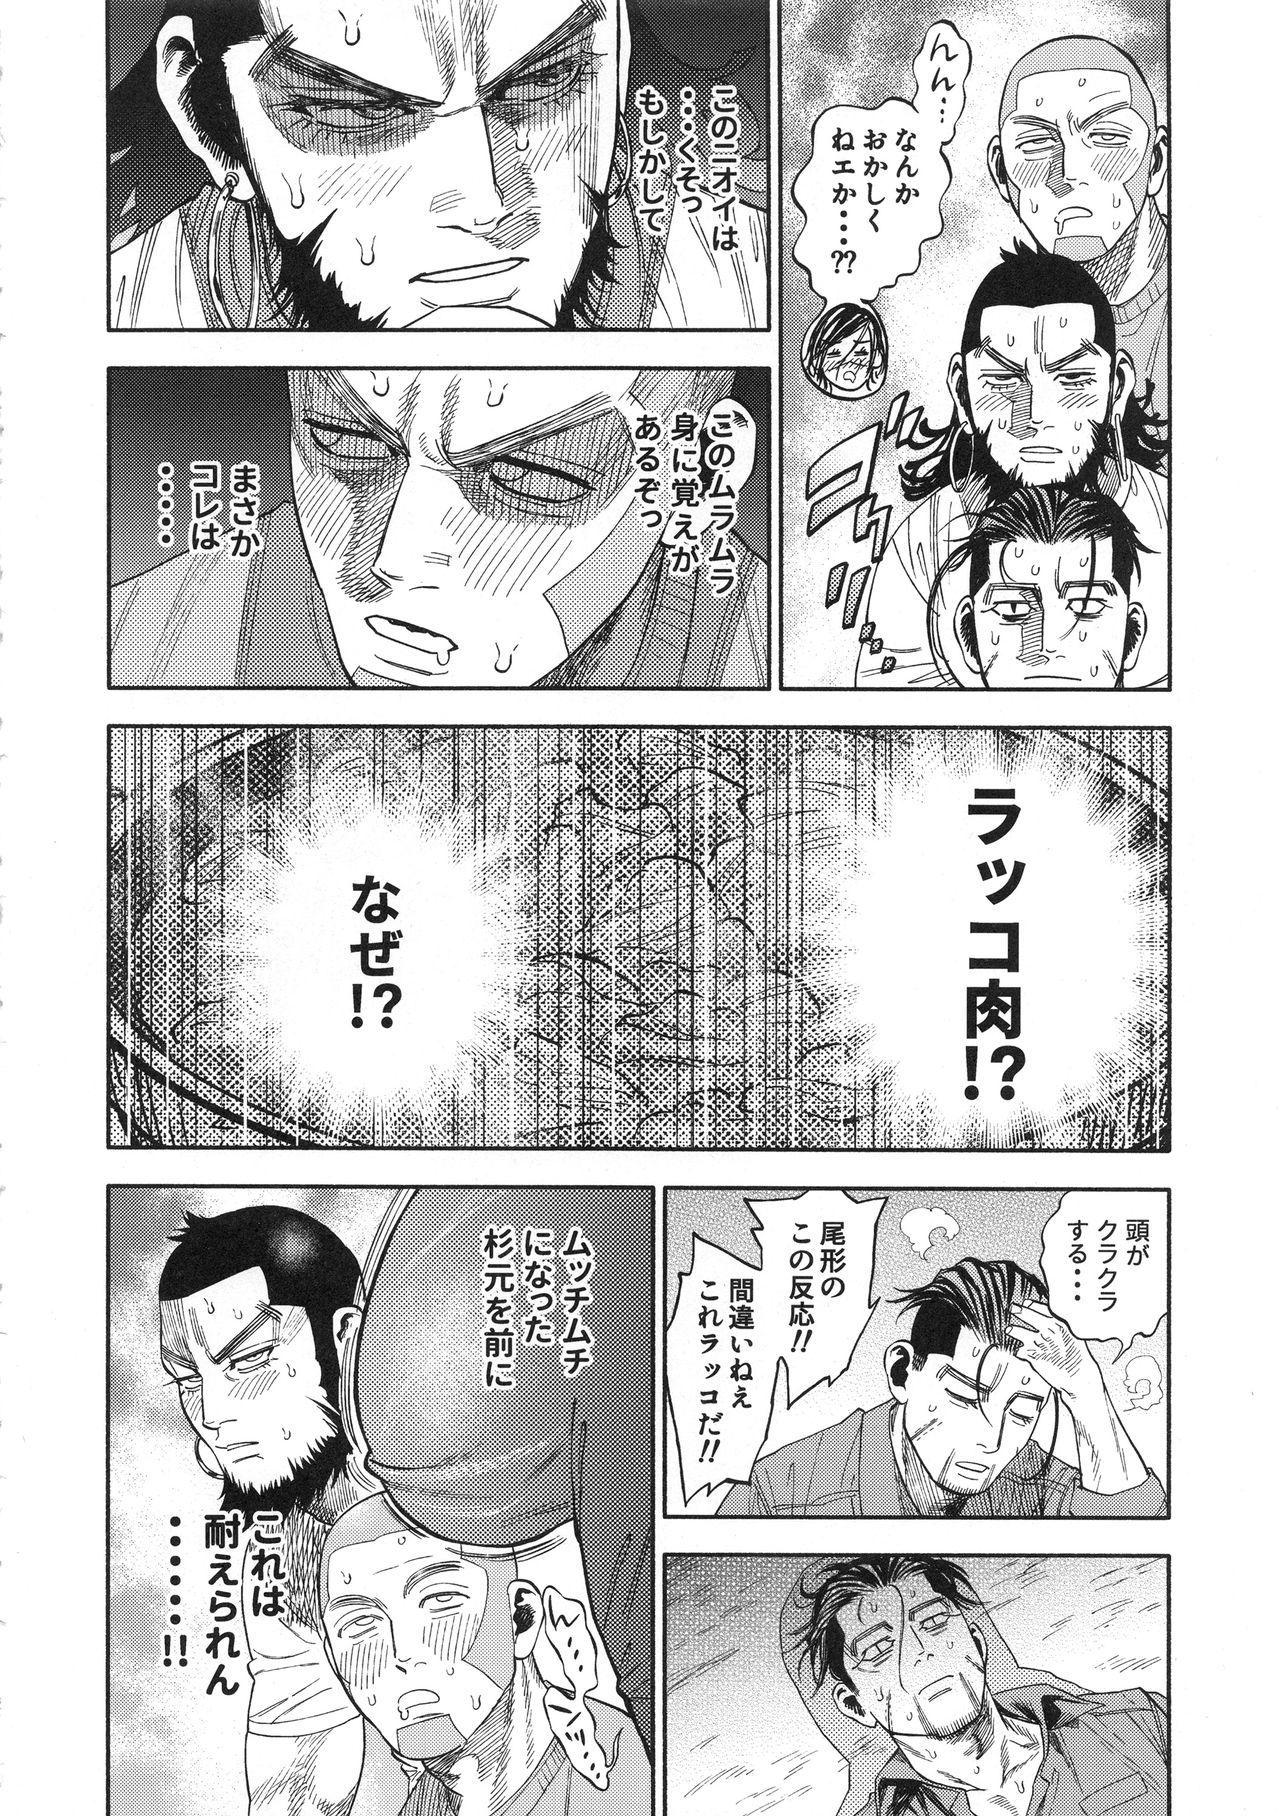 Cdmx Sugimoto-san to Rakko Nabe Shiyou. - Golden kamuy Bigass - Page 8